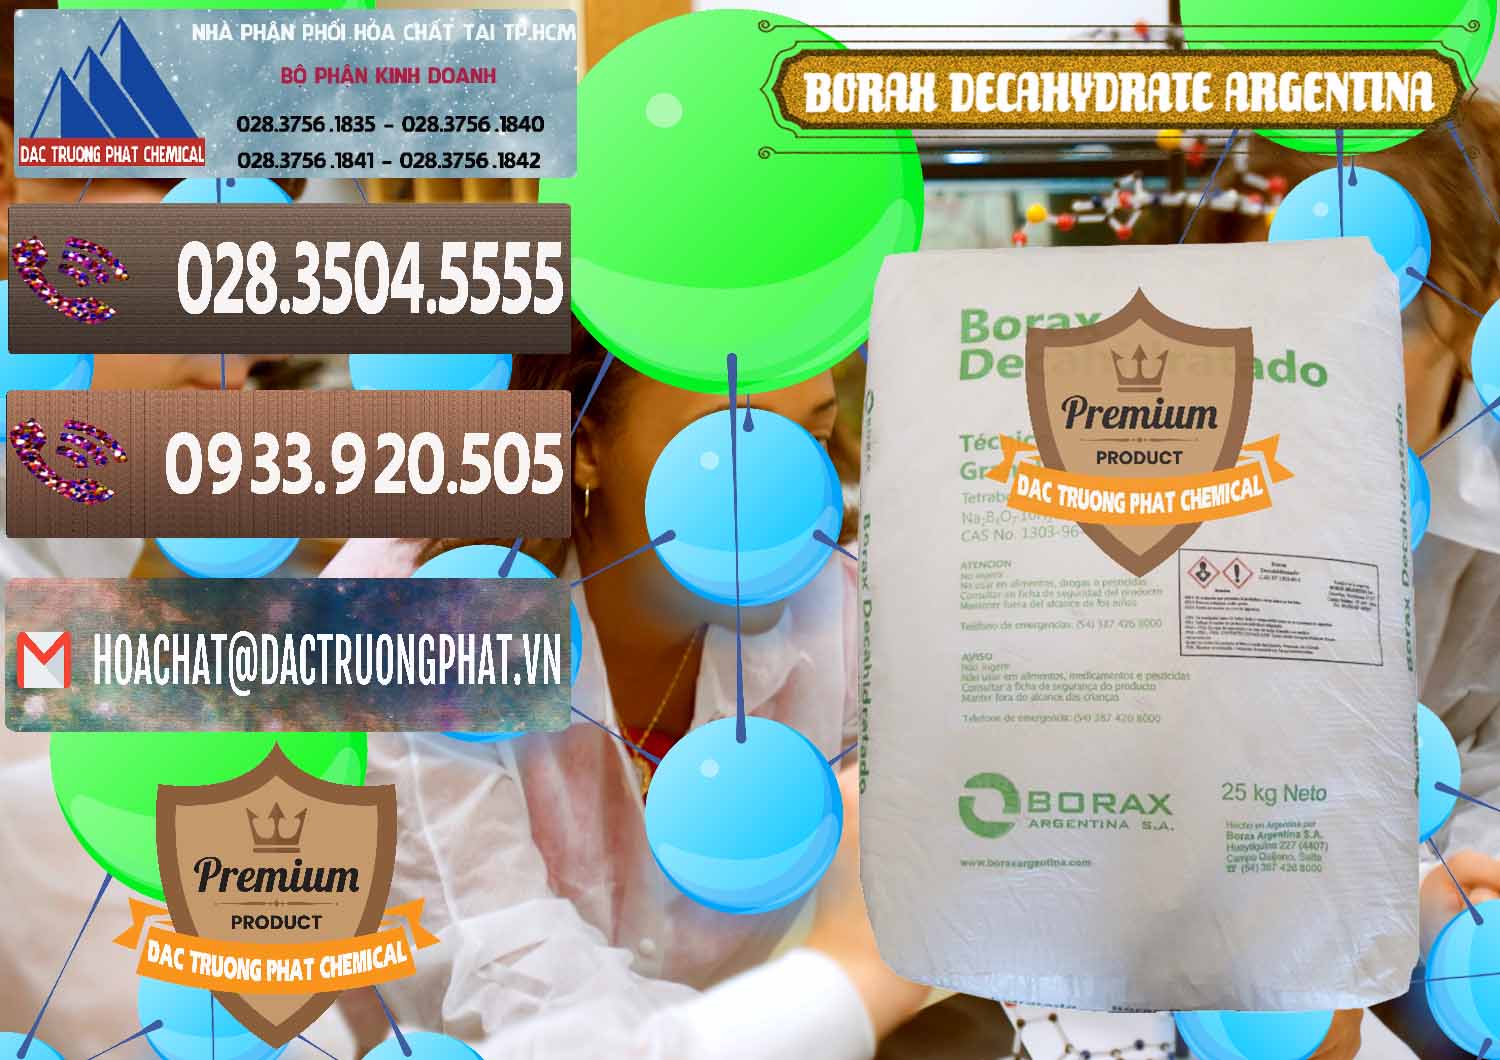 Công ty nhập khẩu ( bán ) Borax Decahydrate Argentina - 0446 - Công ty chuyên cung cấp và kinh doanh hóa chất tại TP.HCM - hoachatviet.net